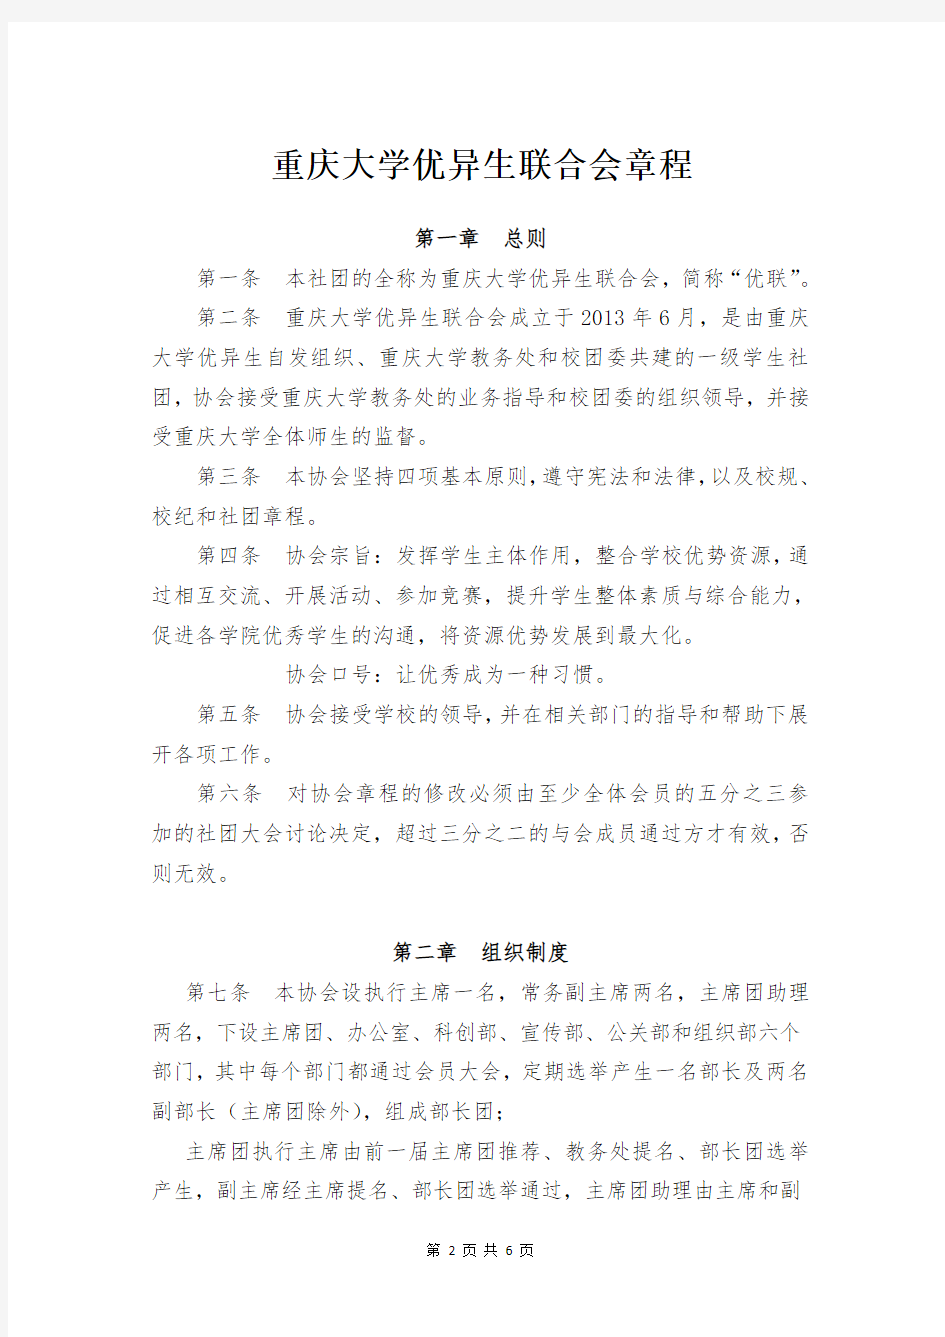 重庆大学优异生联合会章程(修订版)